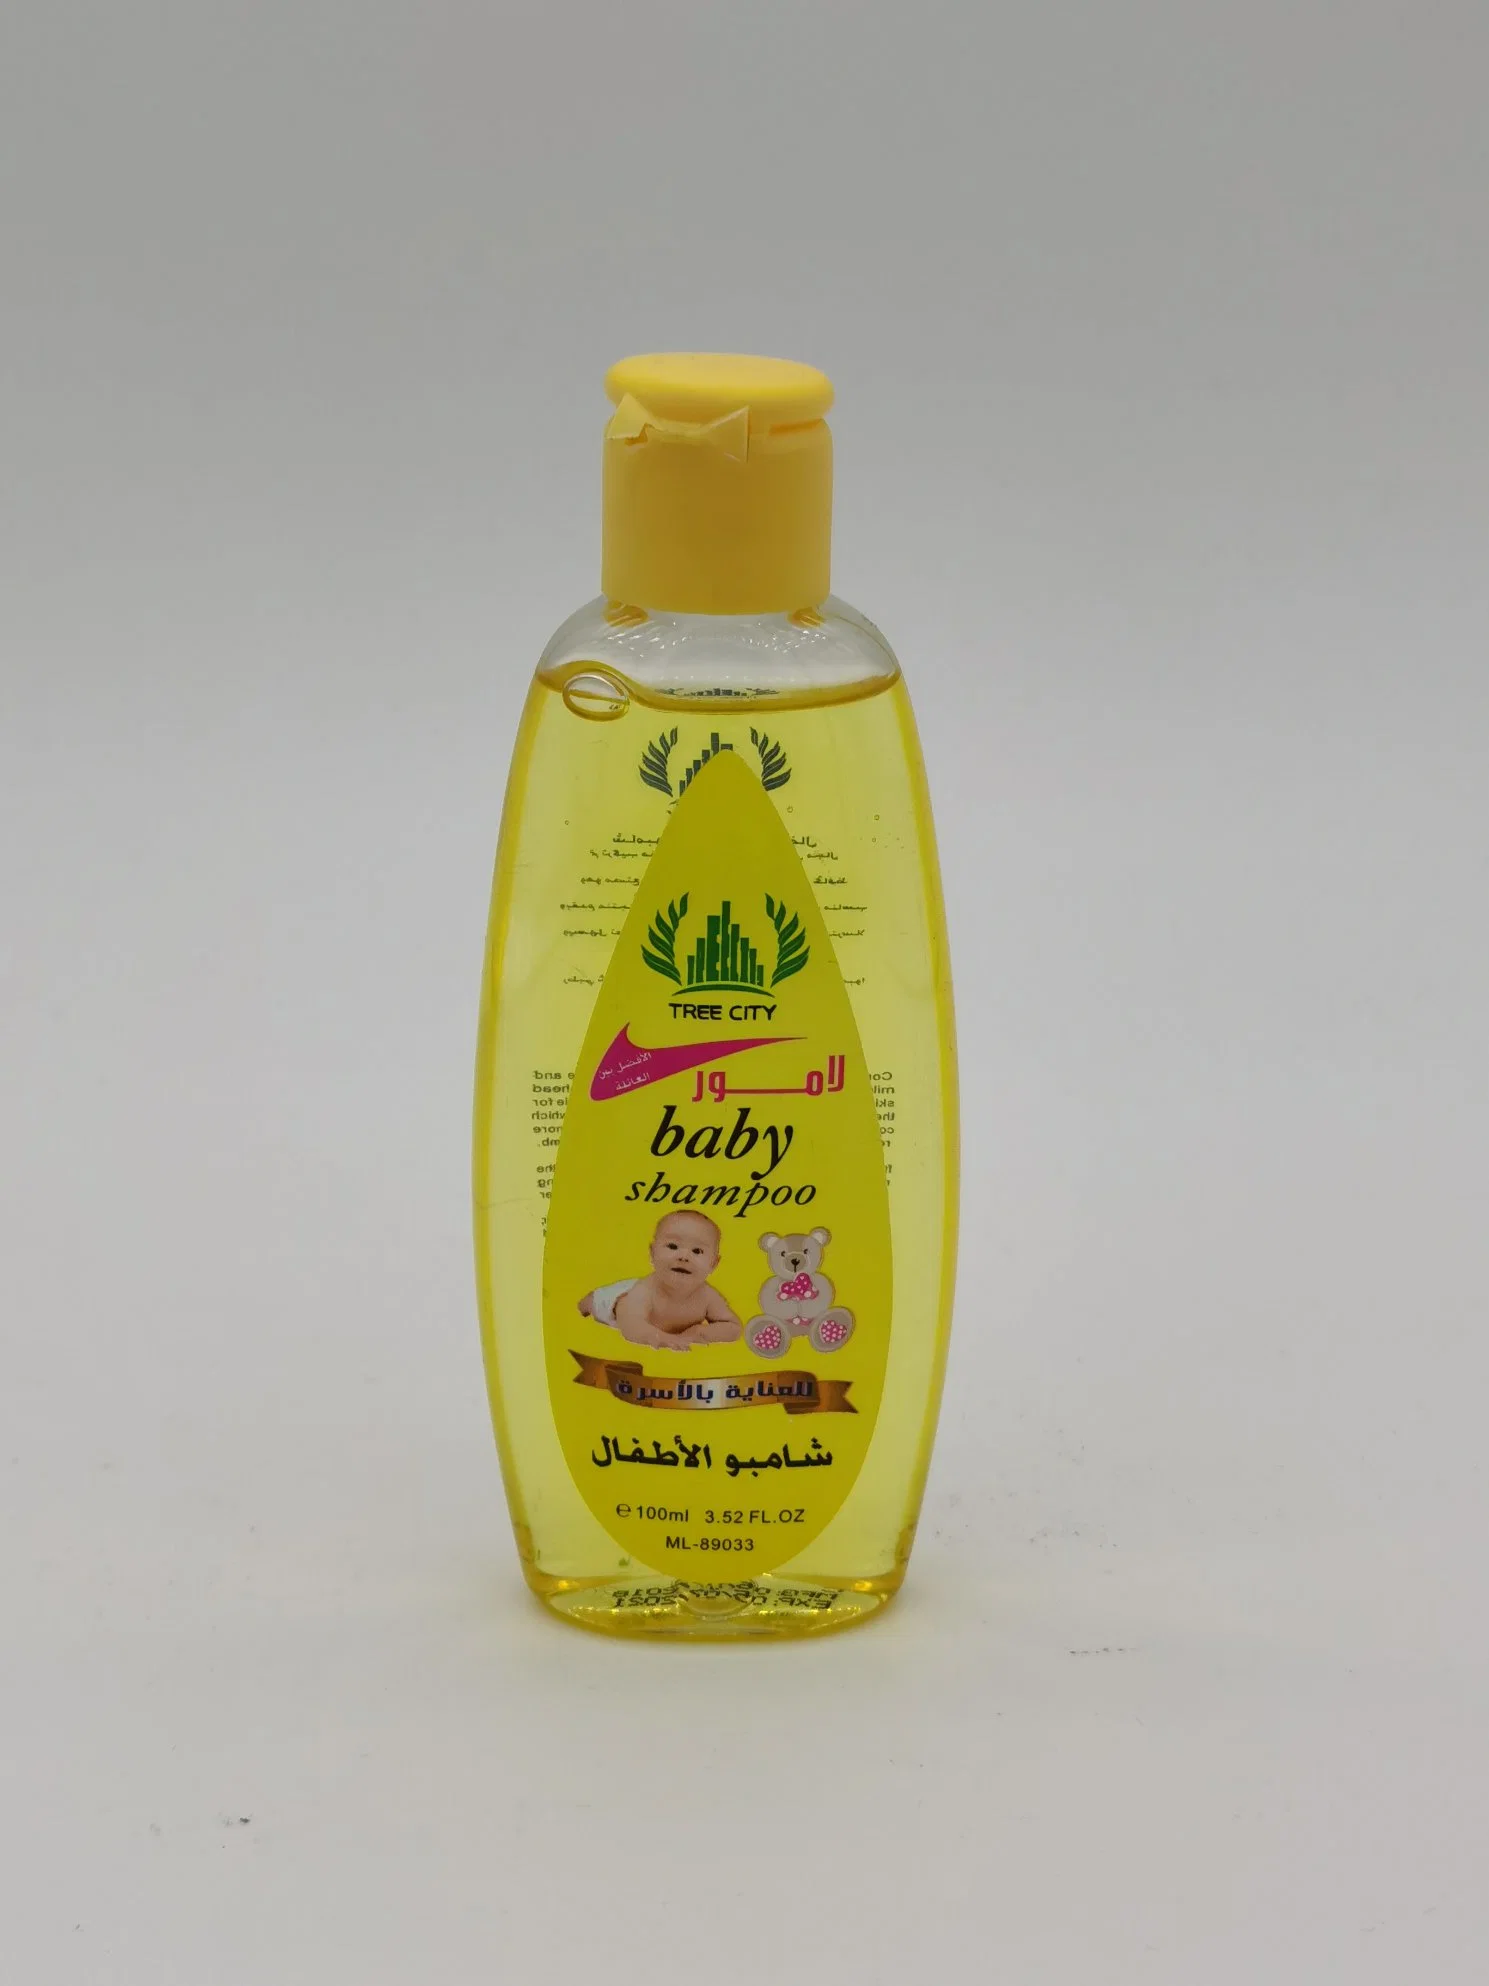 Tree City Baby Shampoo Baby Skin Care 100 Ml